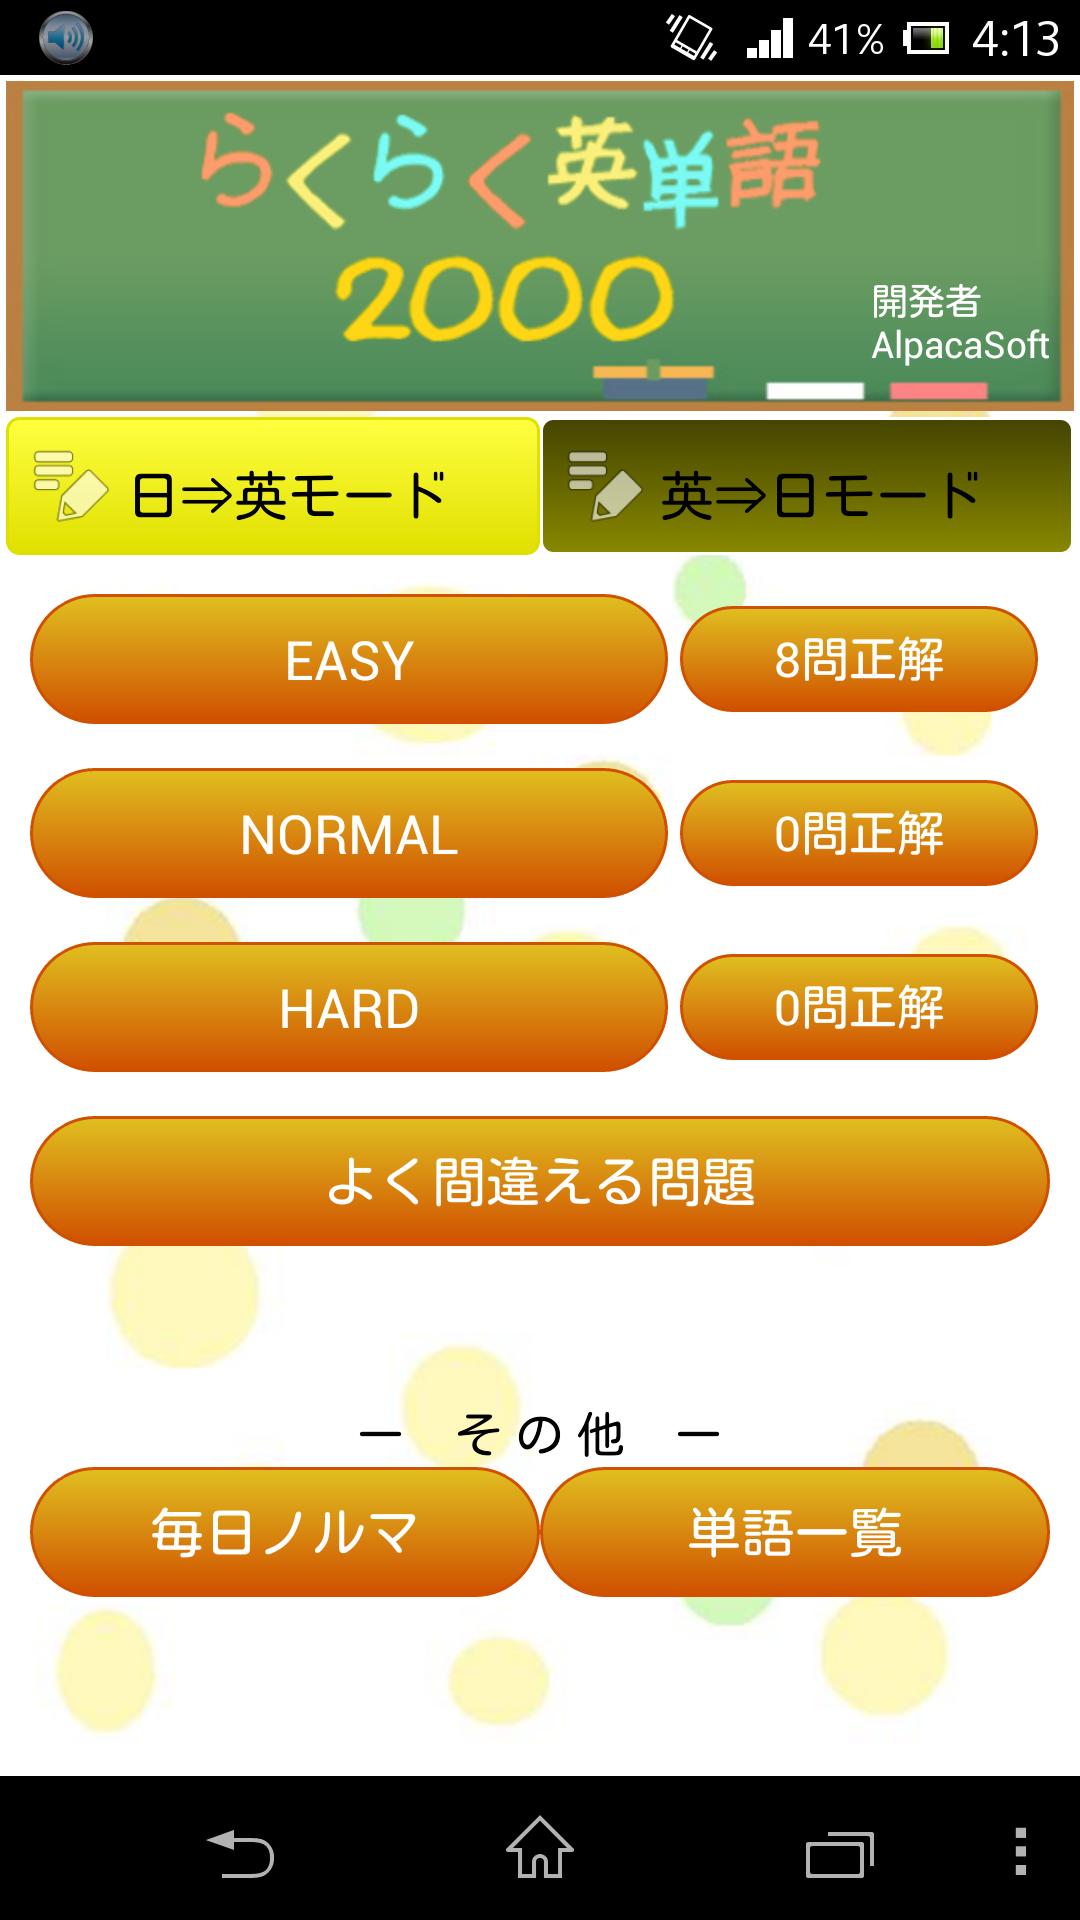 らくらく英単語00 英語学習クイズゲーム For Android Apk Download